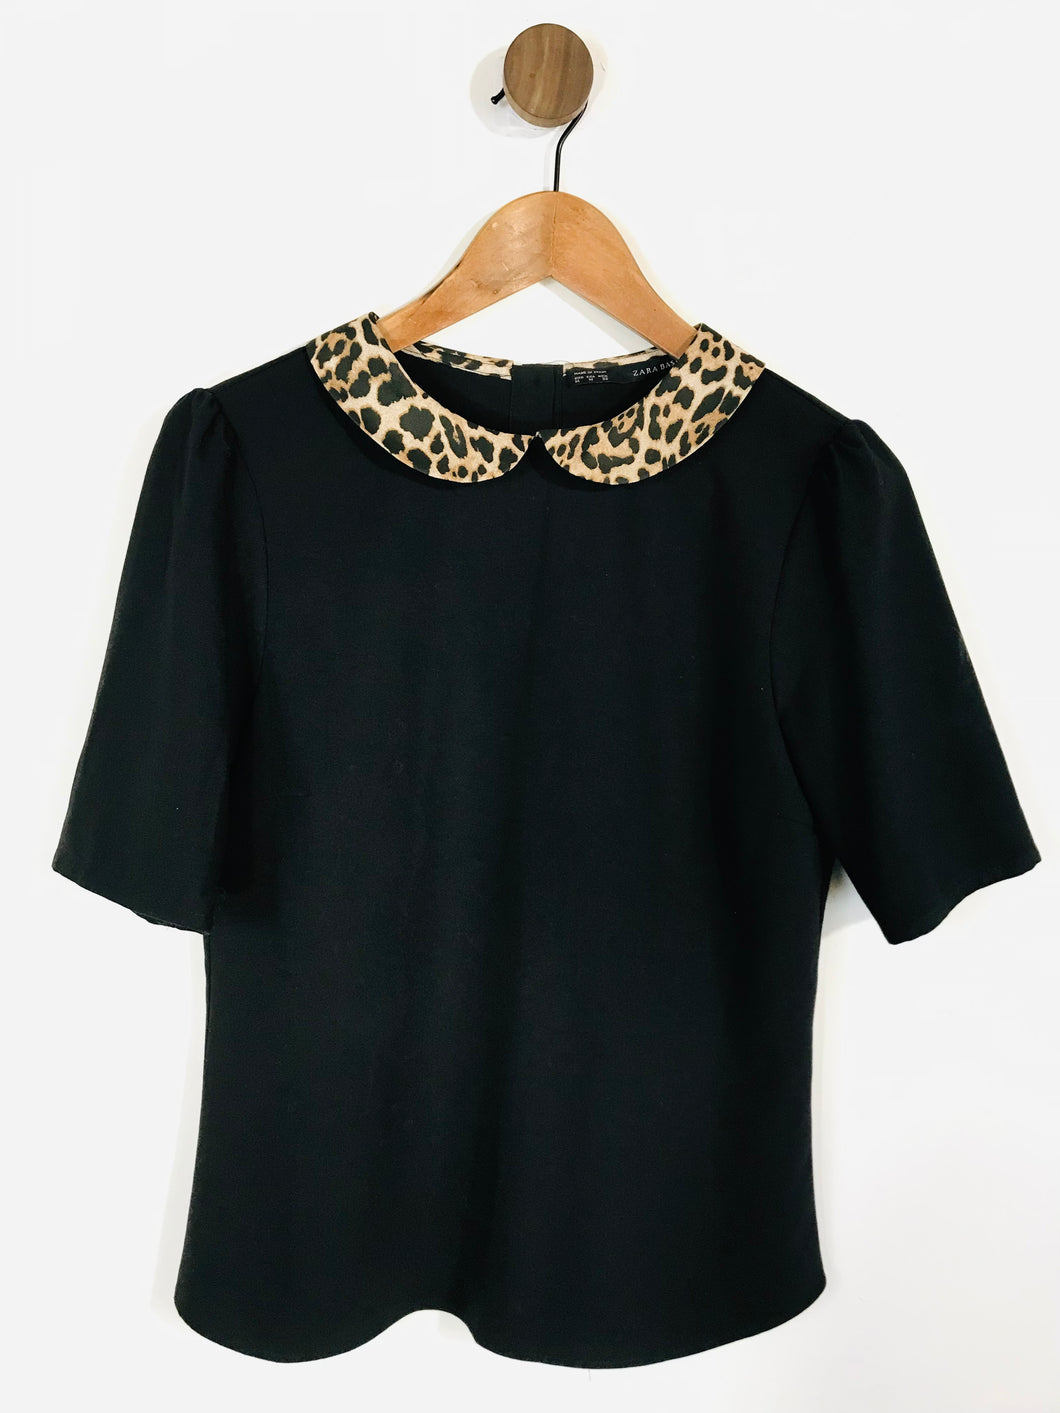 Zara Women's Peter Pan Collar Blouse | M UK10-12 | Black